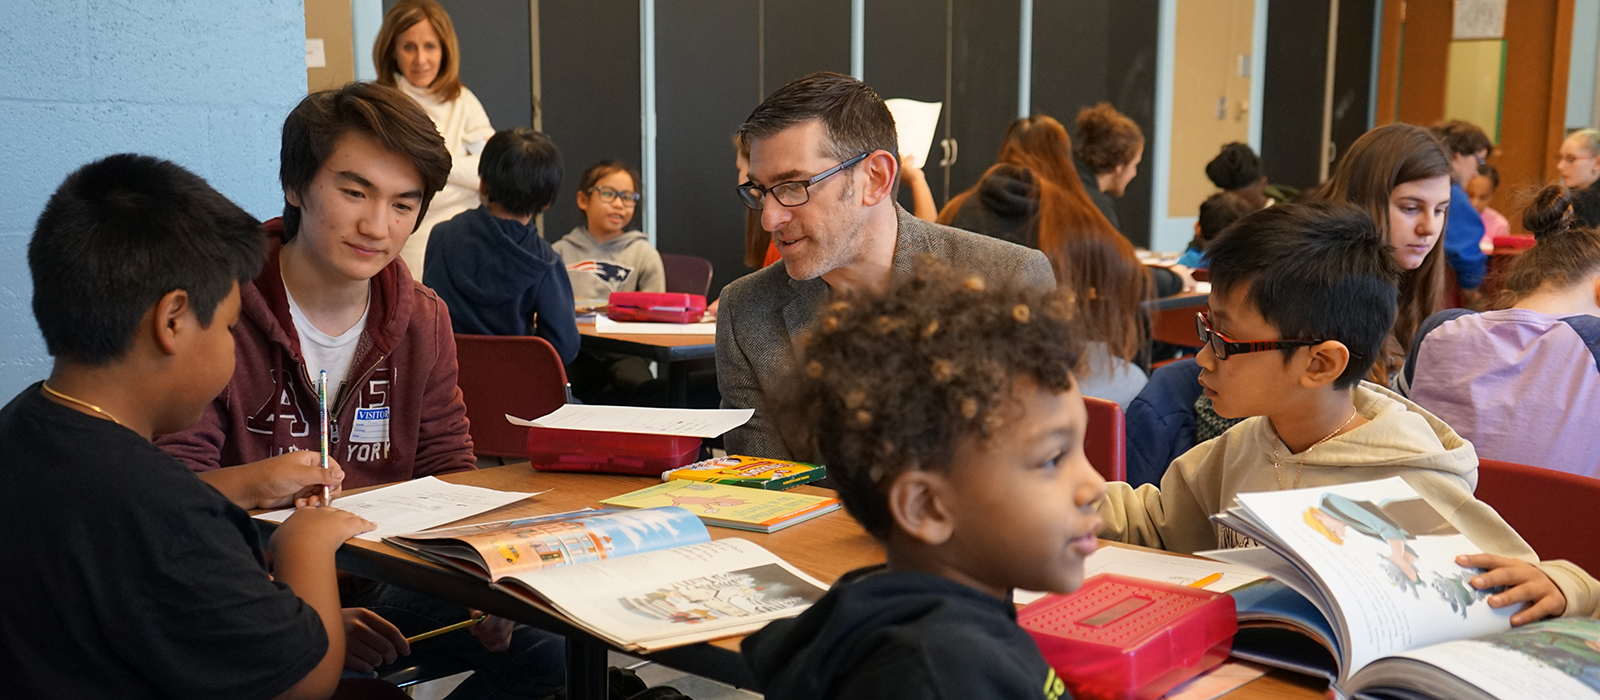 Asst. Teaching Prof. Matt Hurwitz helps students work with grade-schoolers